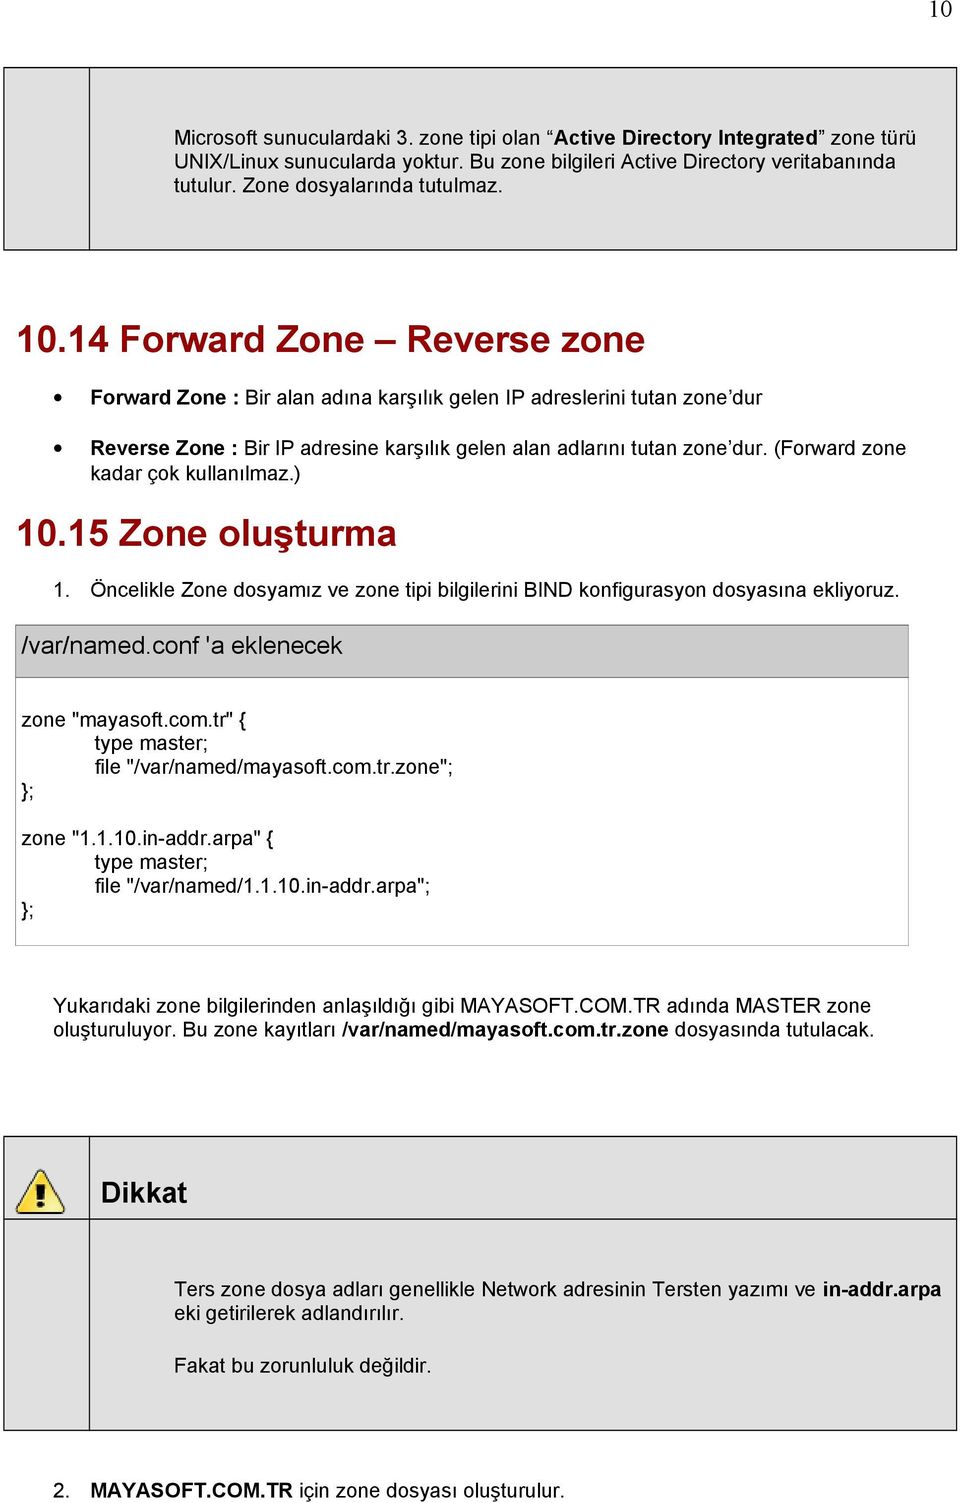 (Forward zone kadar çok kullanılmaz.) 10.15 Zone oluşturma 1. Öncelikle Zone dosyamız ve zone tipi bilgilerini BIND konfigurasyon dosyasına ekliyoruz. /var/named.conf 'a eklenecek zone "mayasoft.com.